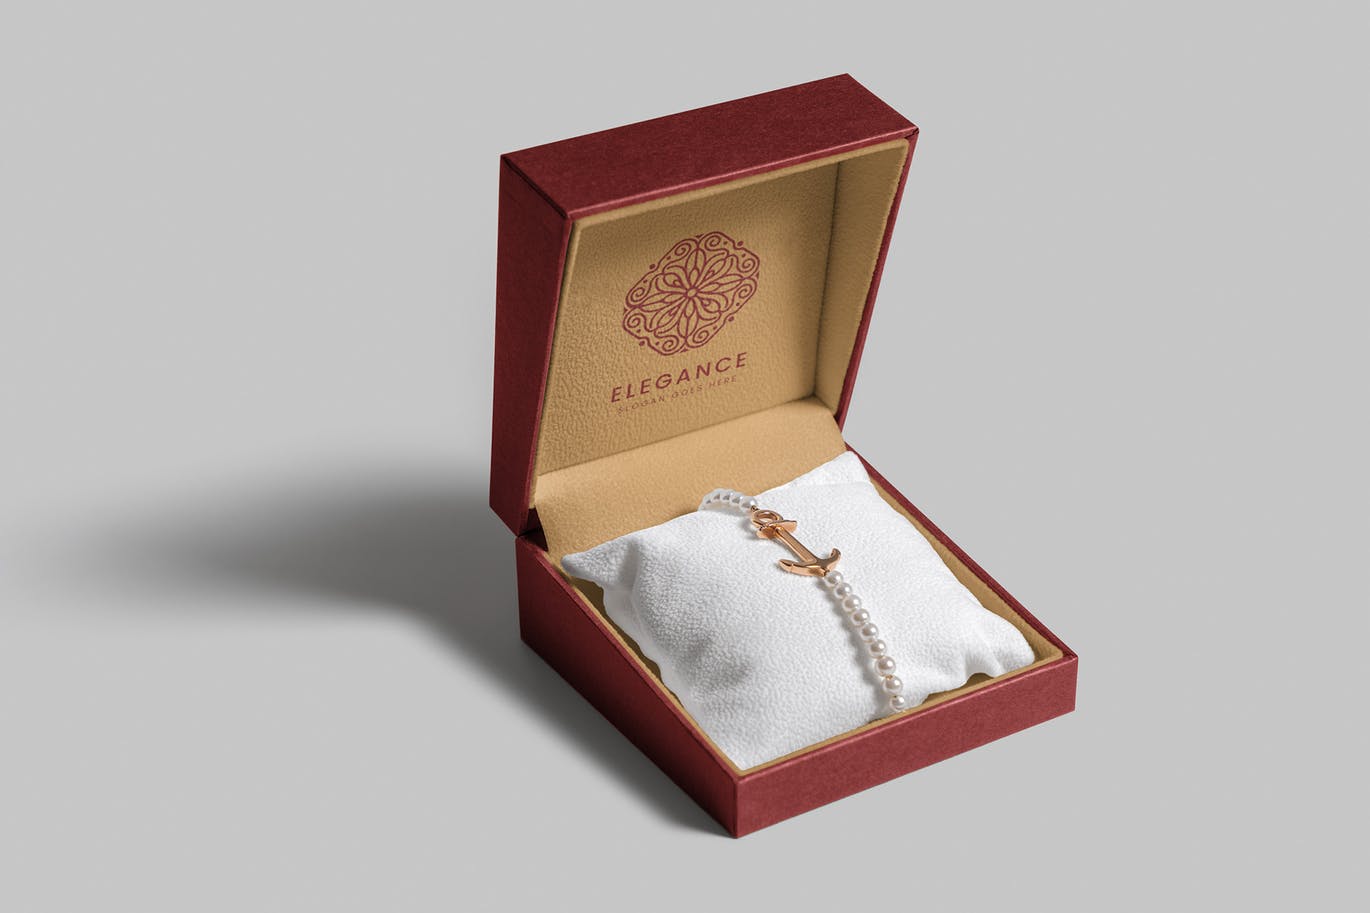 珠宝包装盒设计图第一素材精选模板 Jewelry Packaging Box Mockups插图(10)